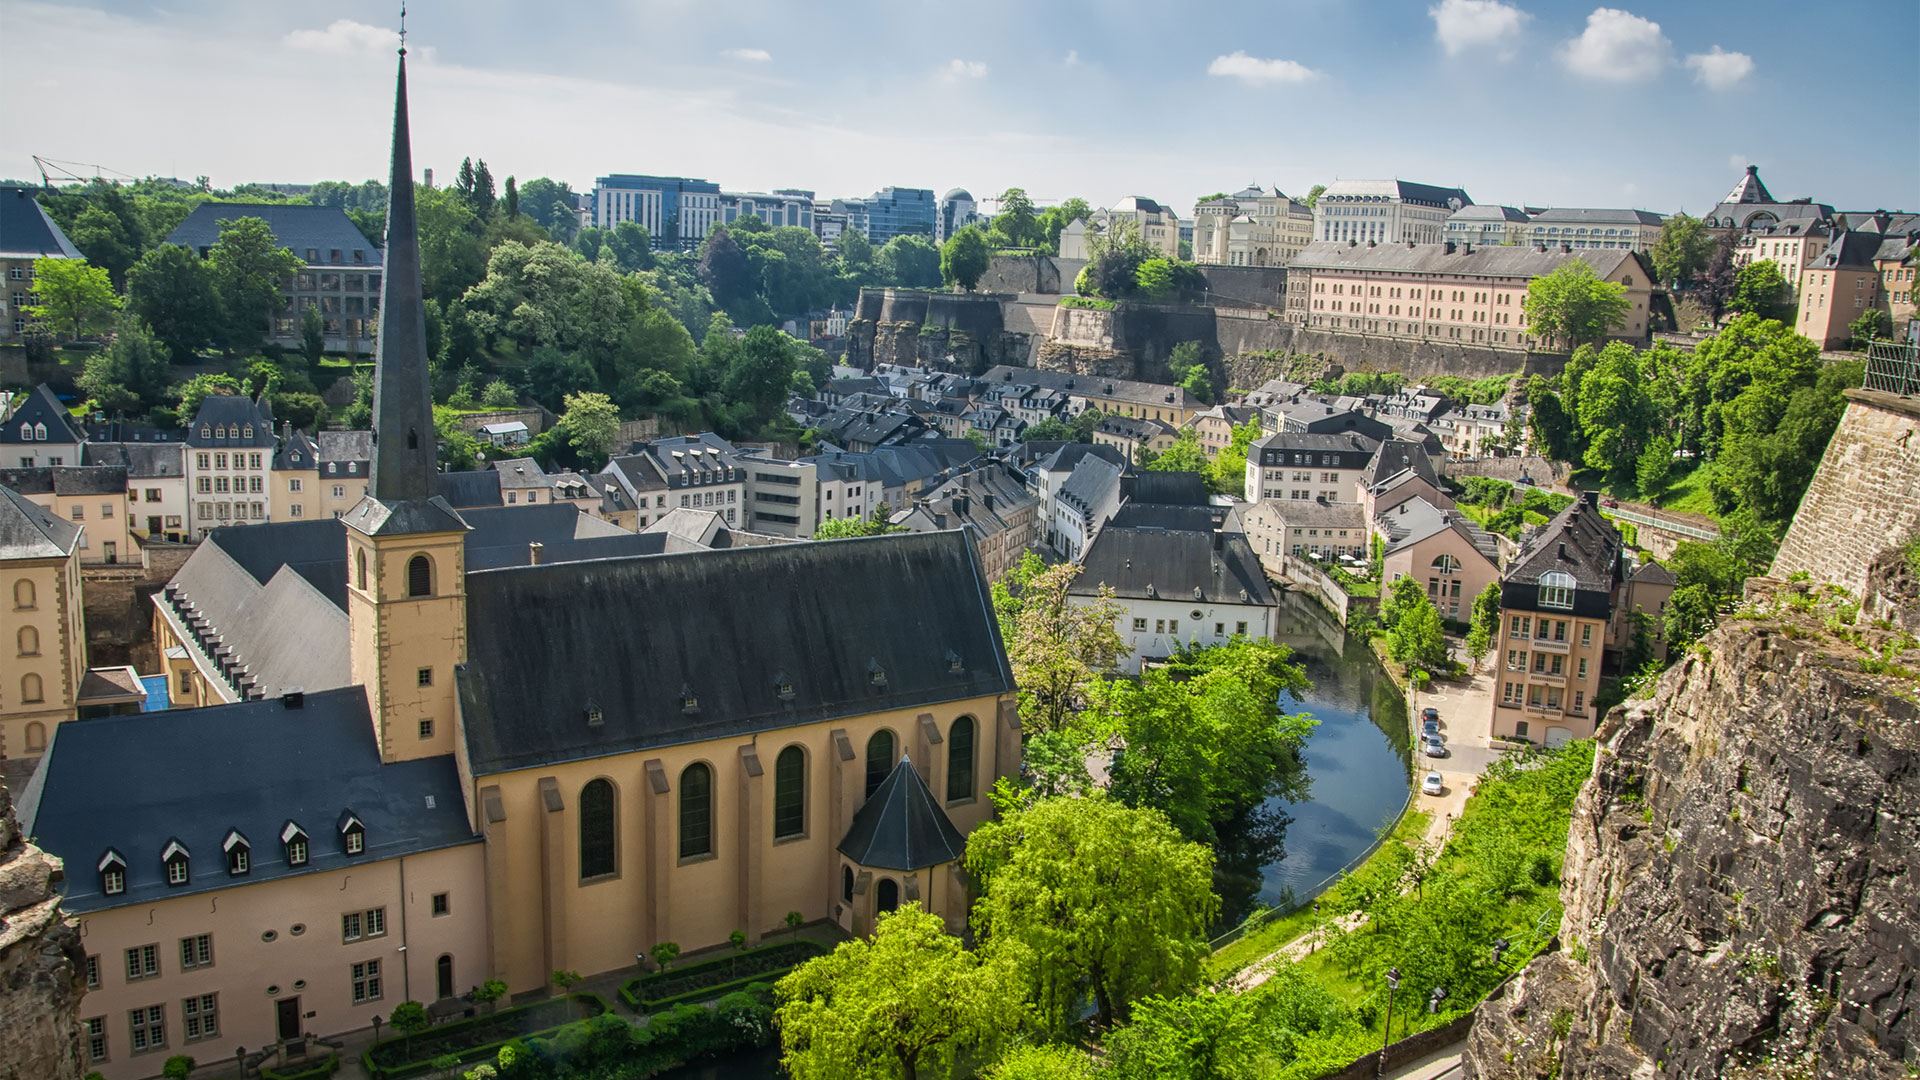 Luxemburgo aparece como el país más rico del mundo en base a su PBI per cápita. (Getty)